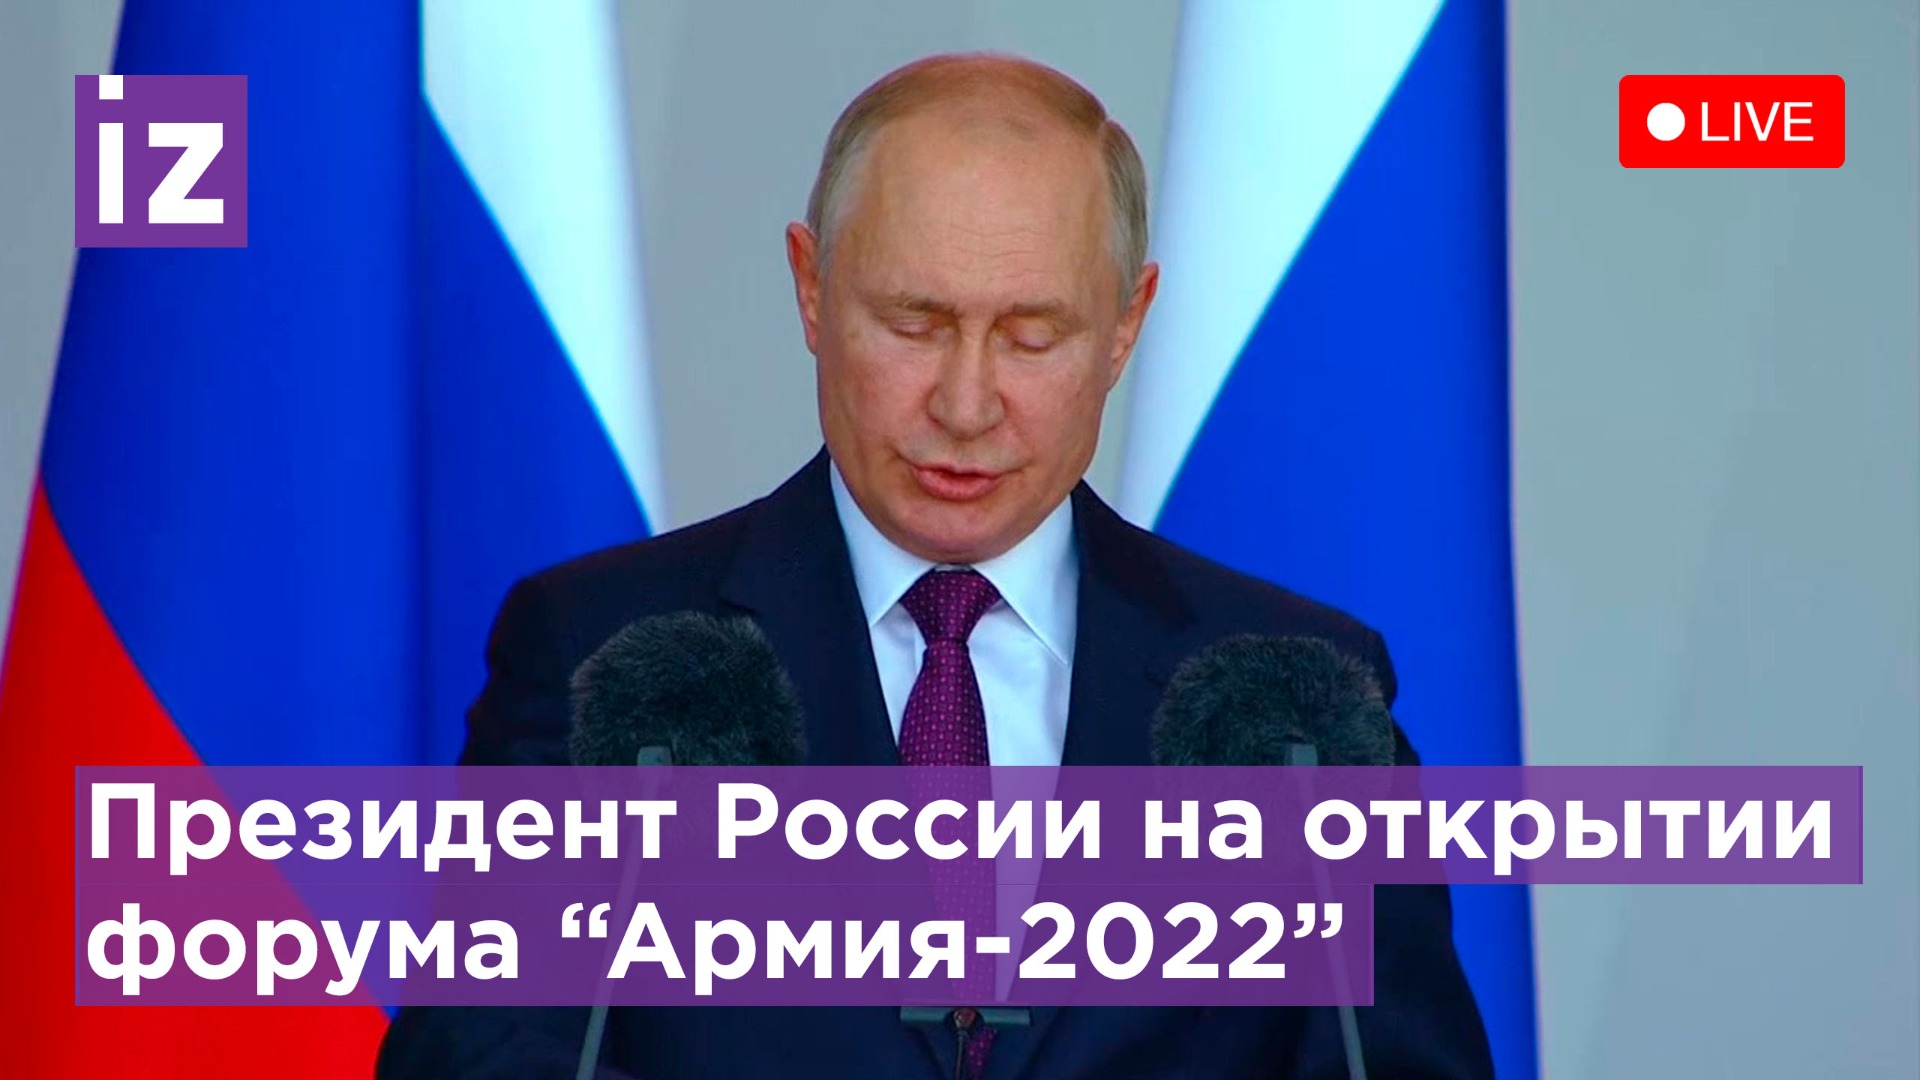  Владимир Путин открывает Международный форум "Армия-2022" / Известия